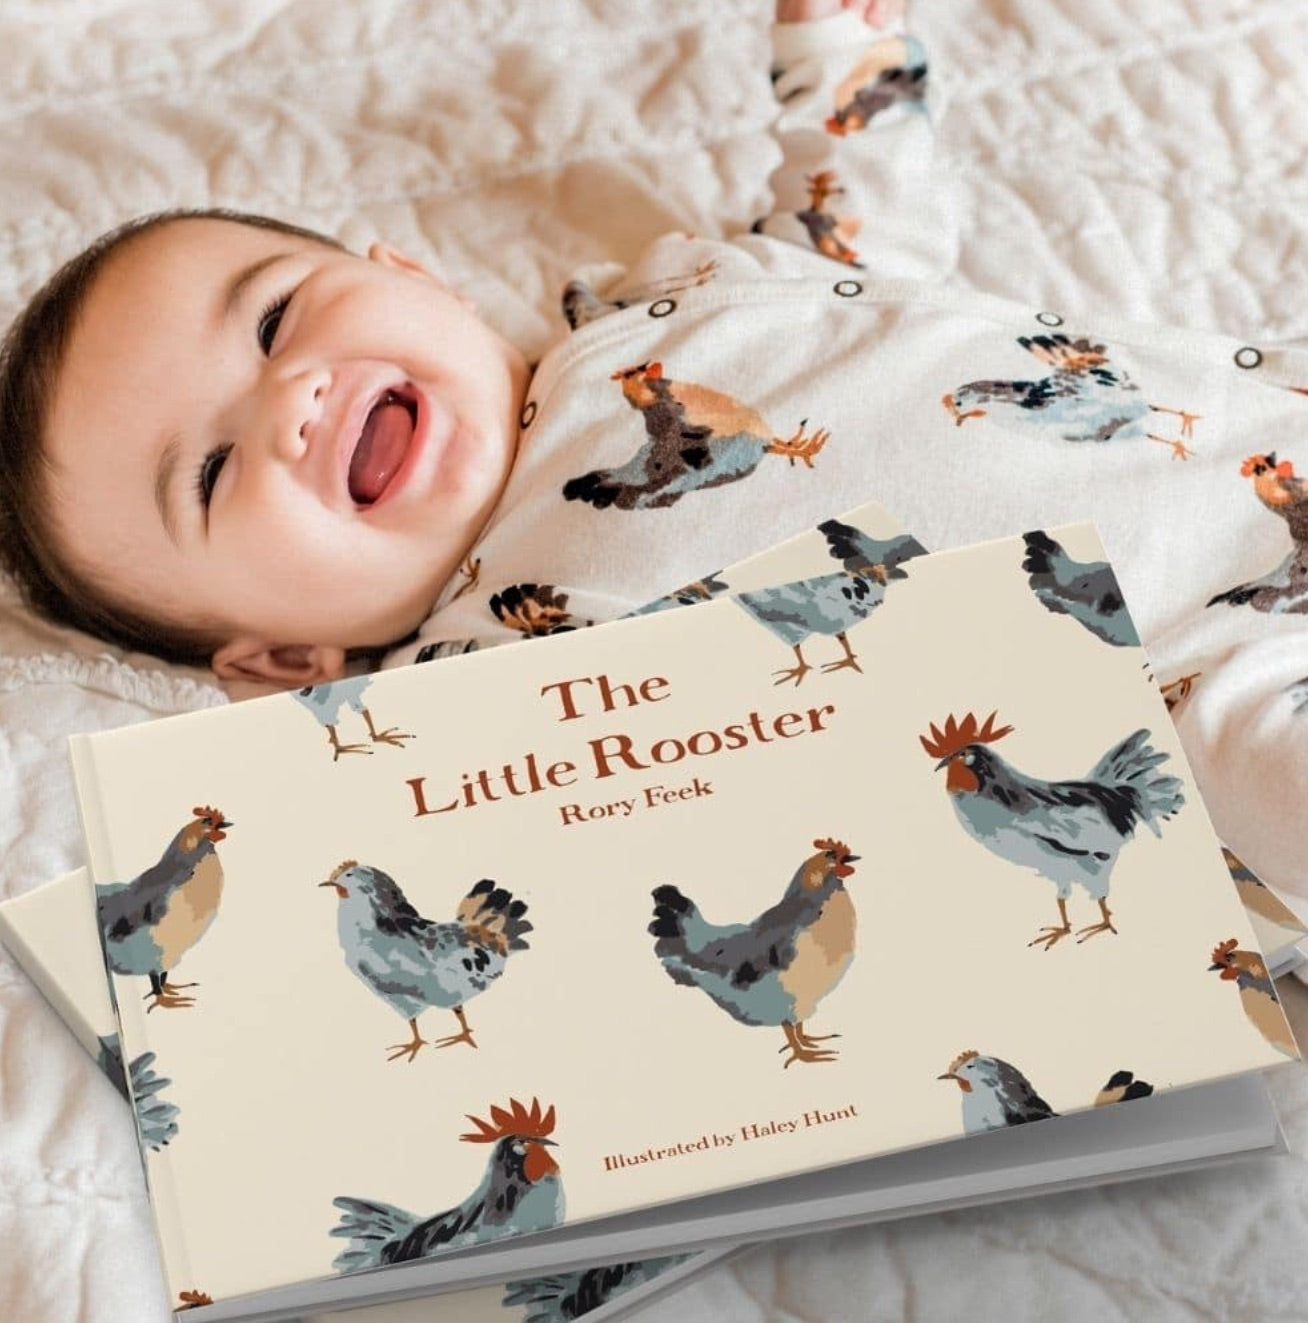 The Little Rooster by Rory Feek (Milkbarn)